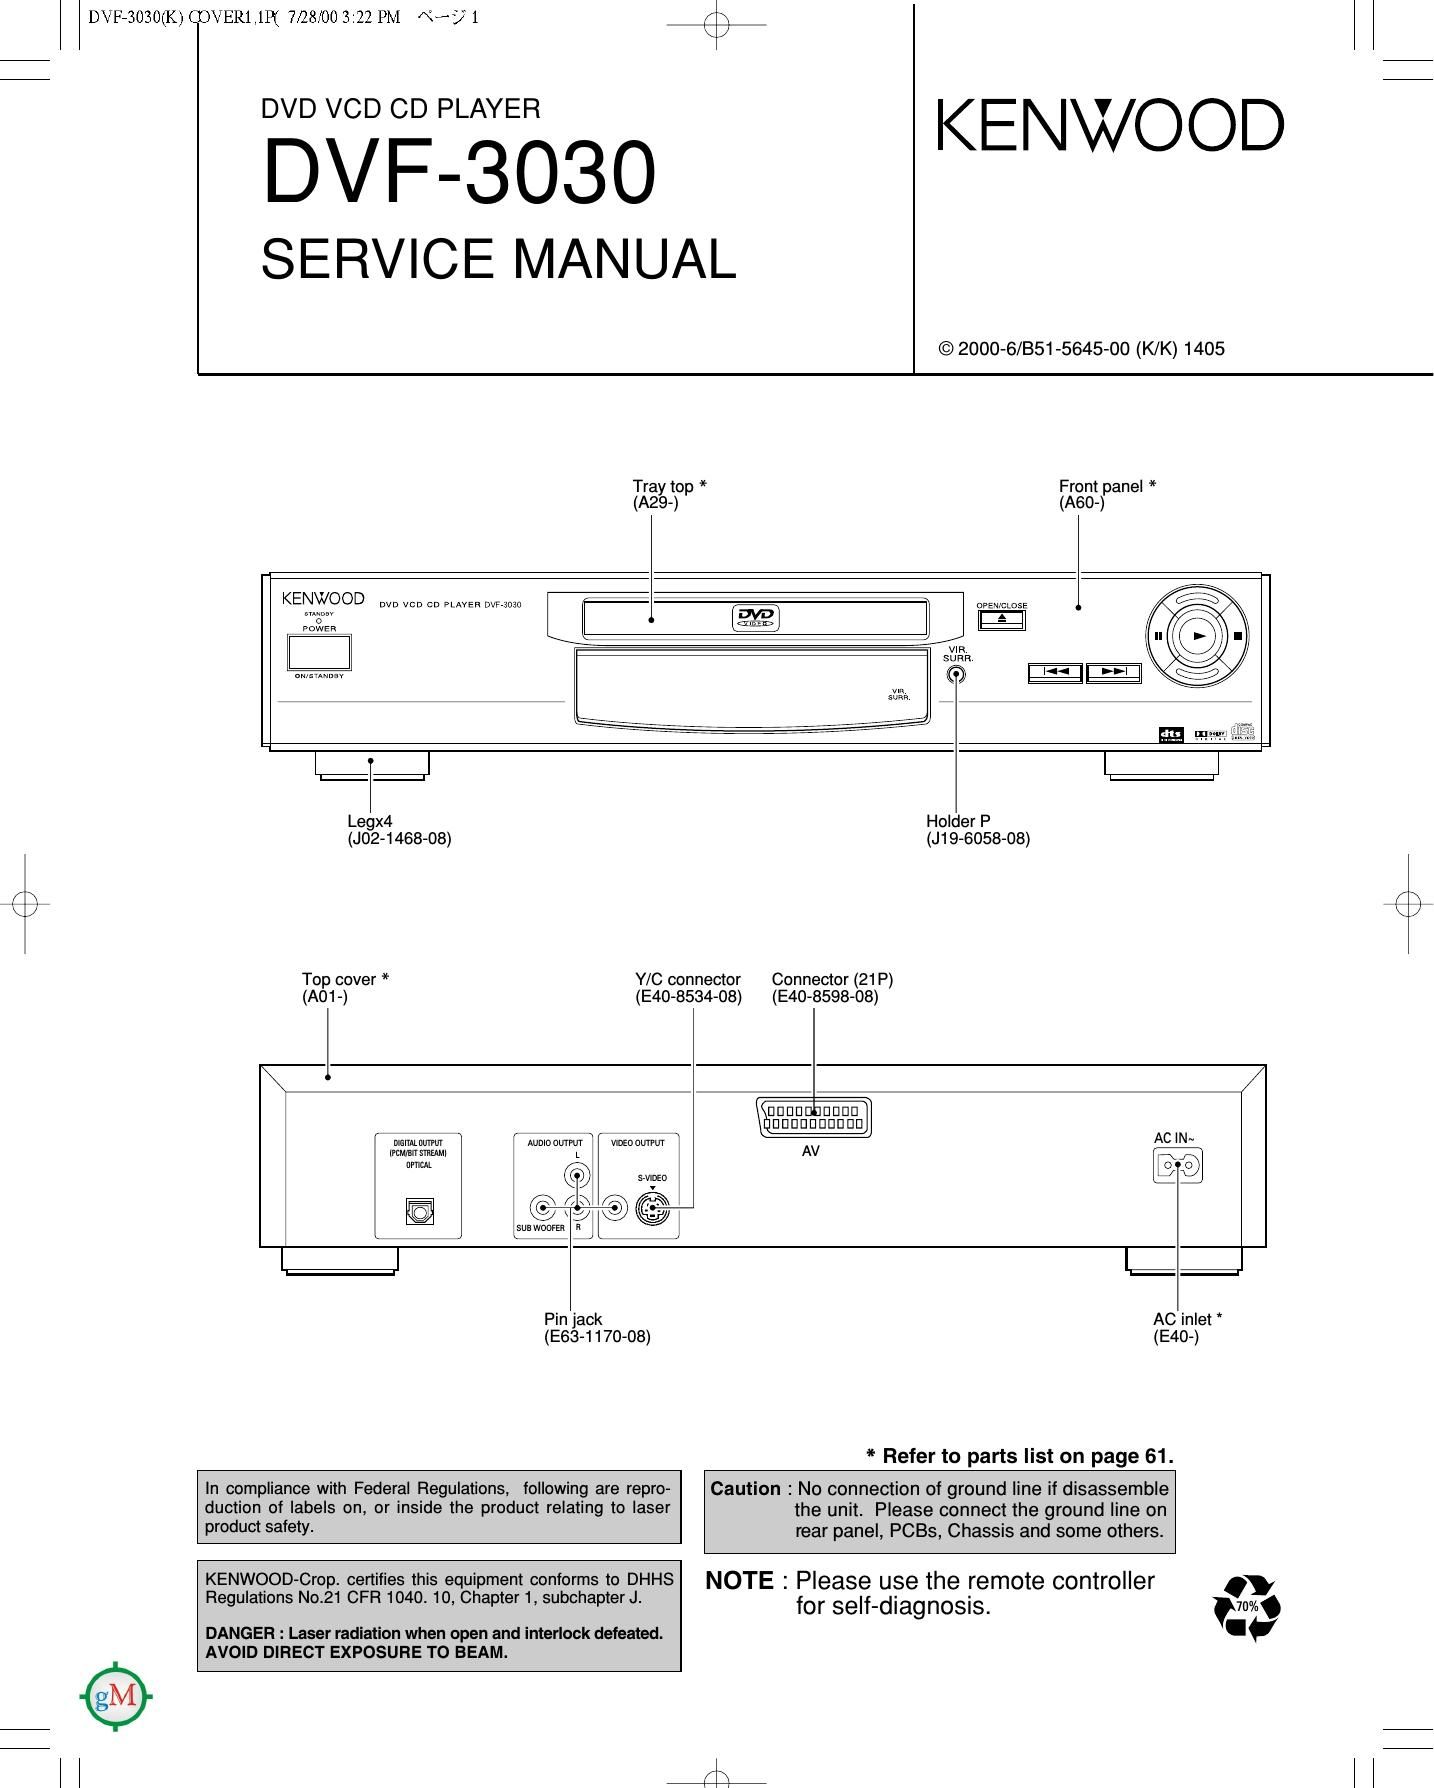 Kenwood DVF 3030 Service Manual